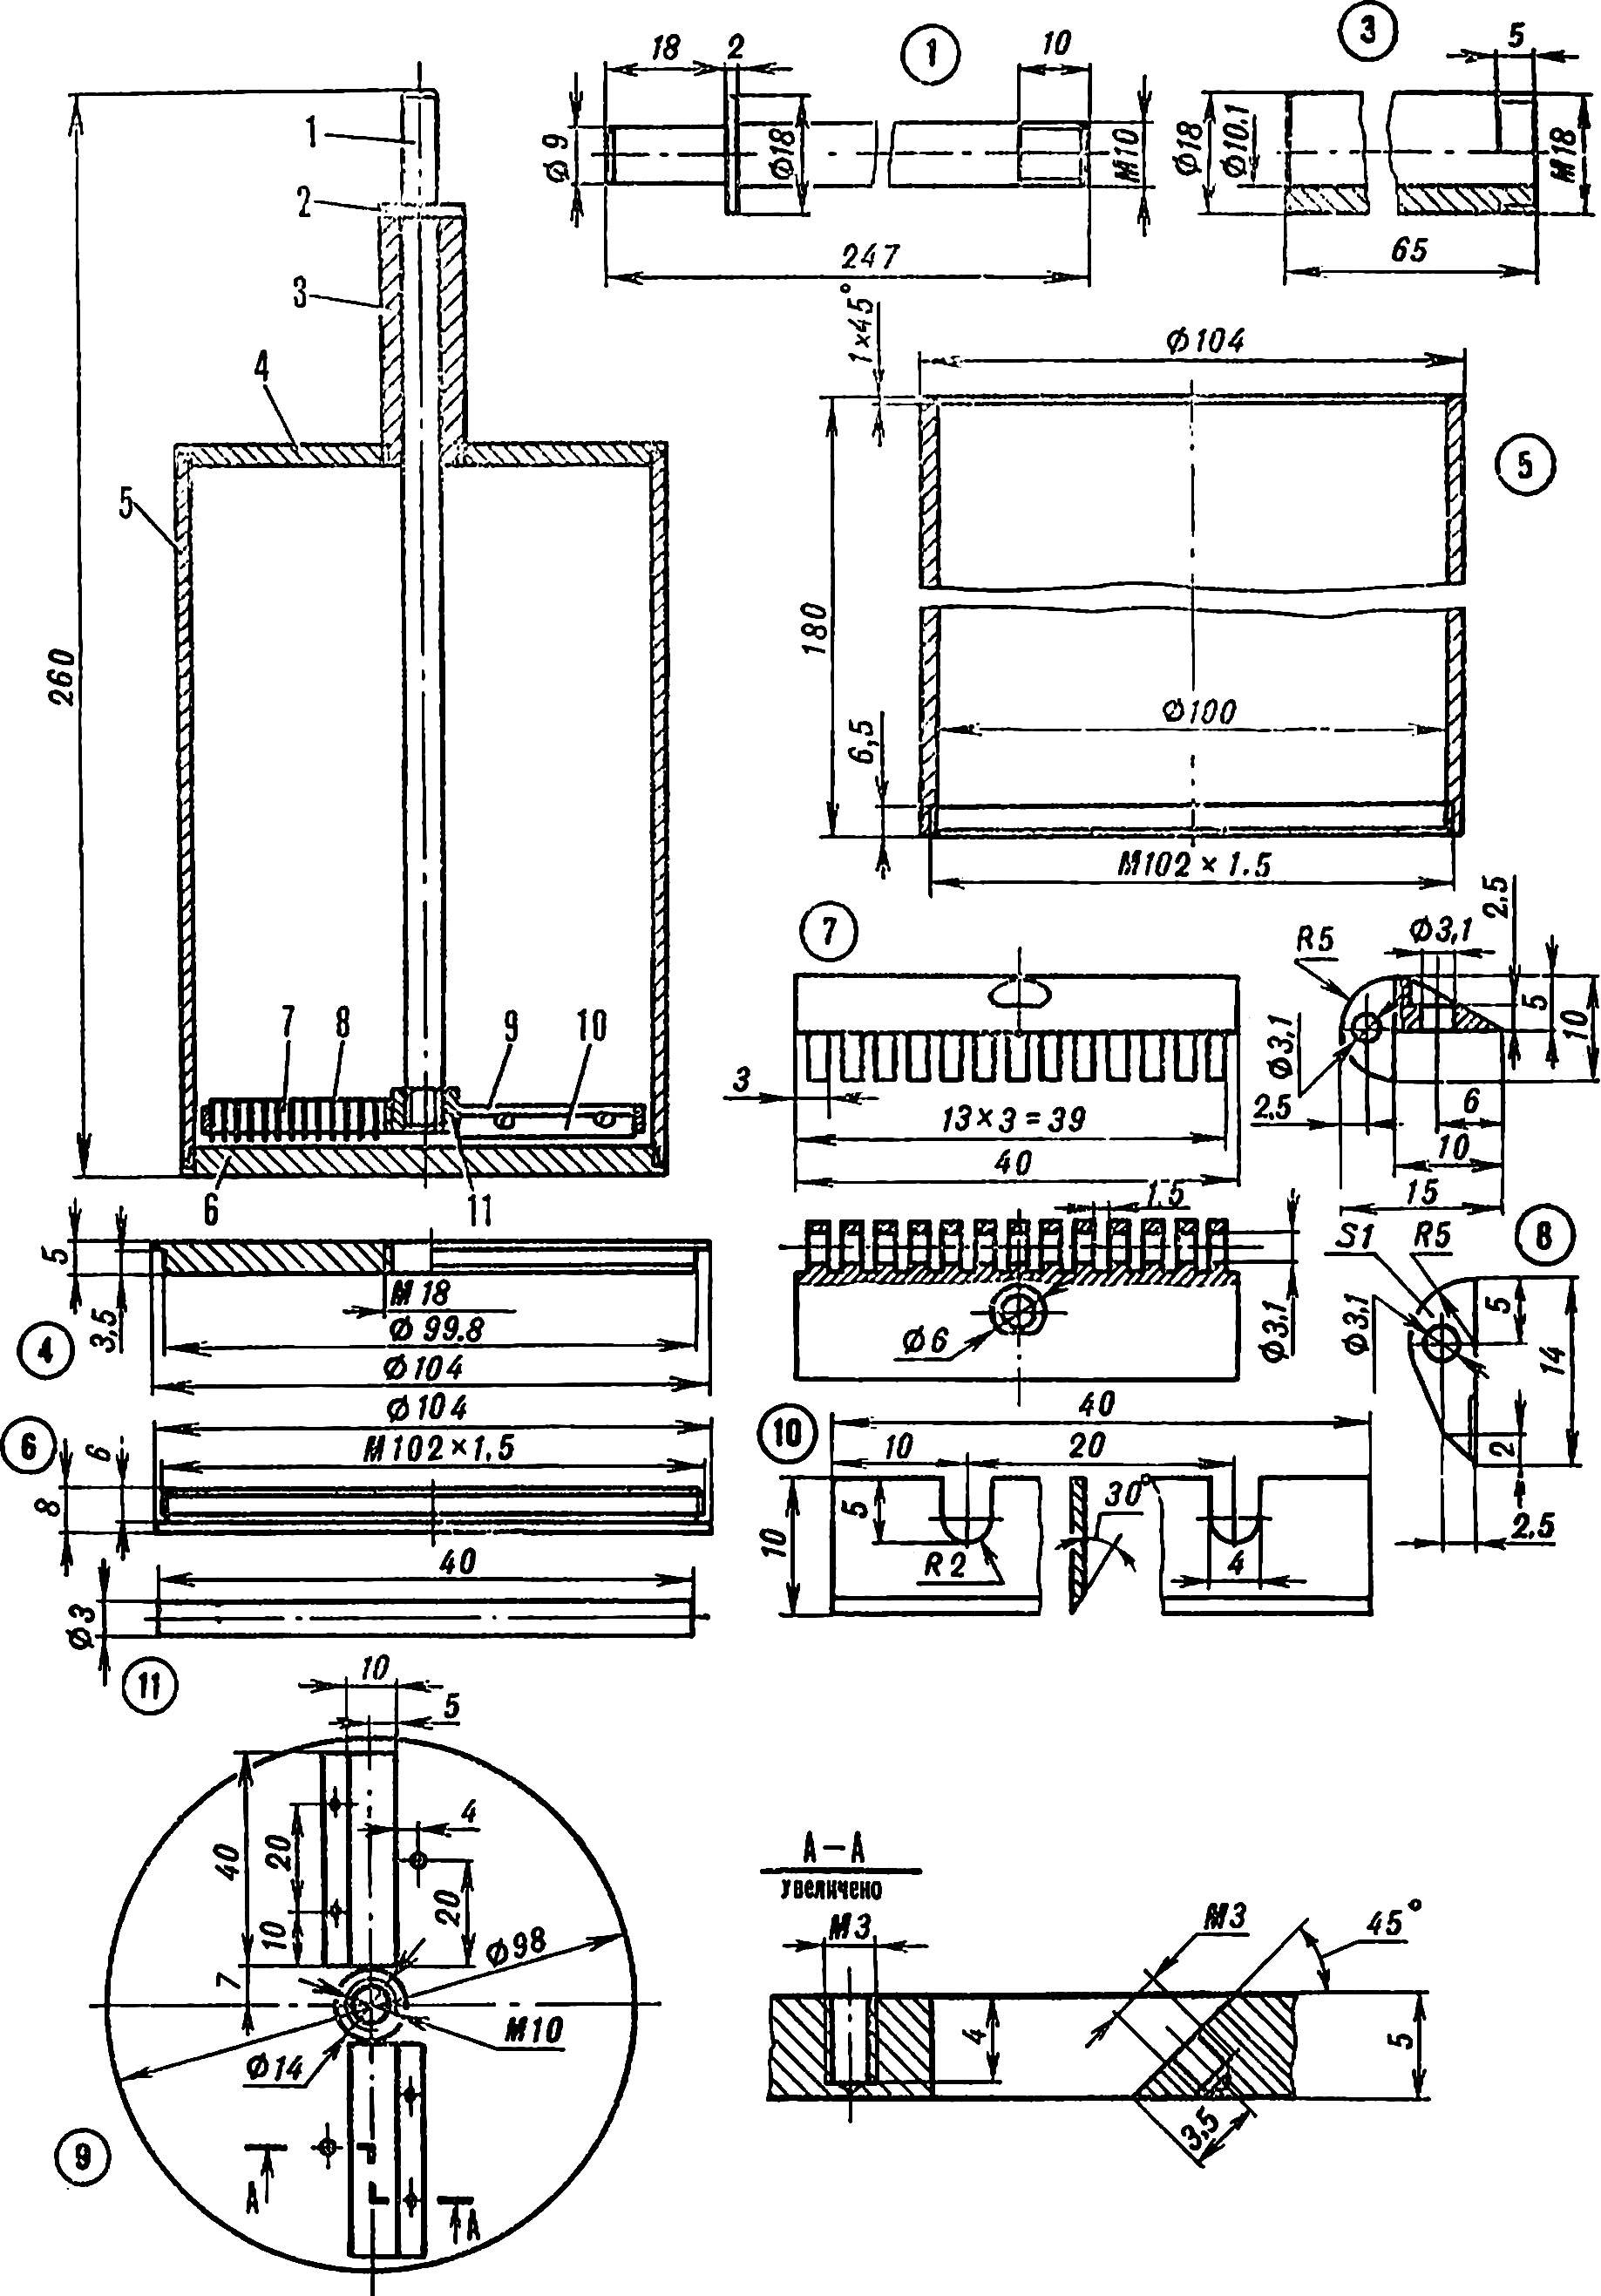 Fig. 1. Mixer 